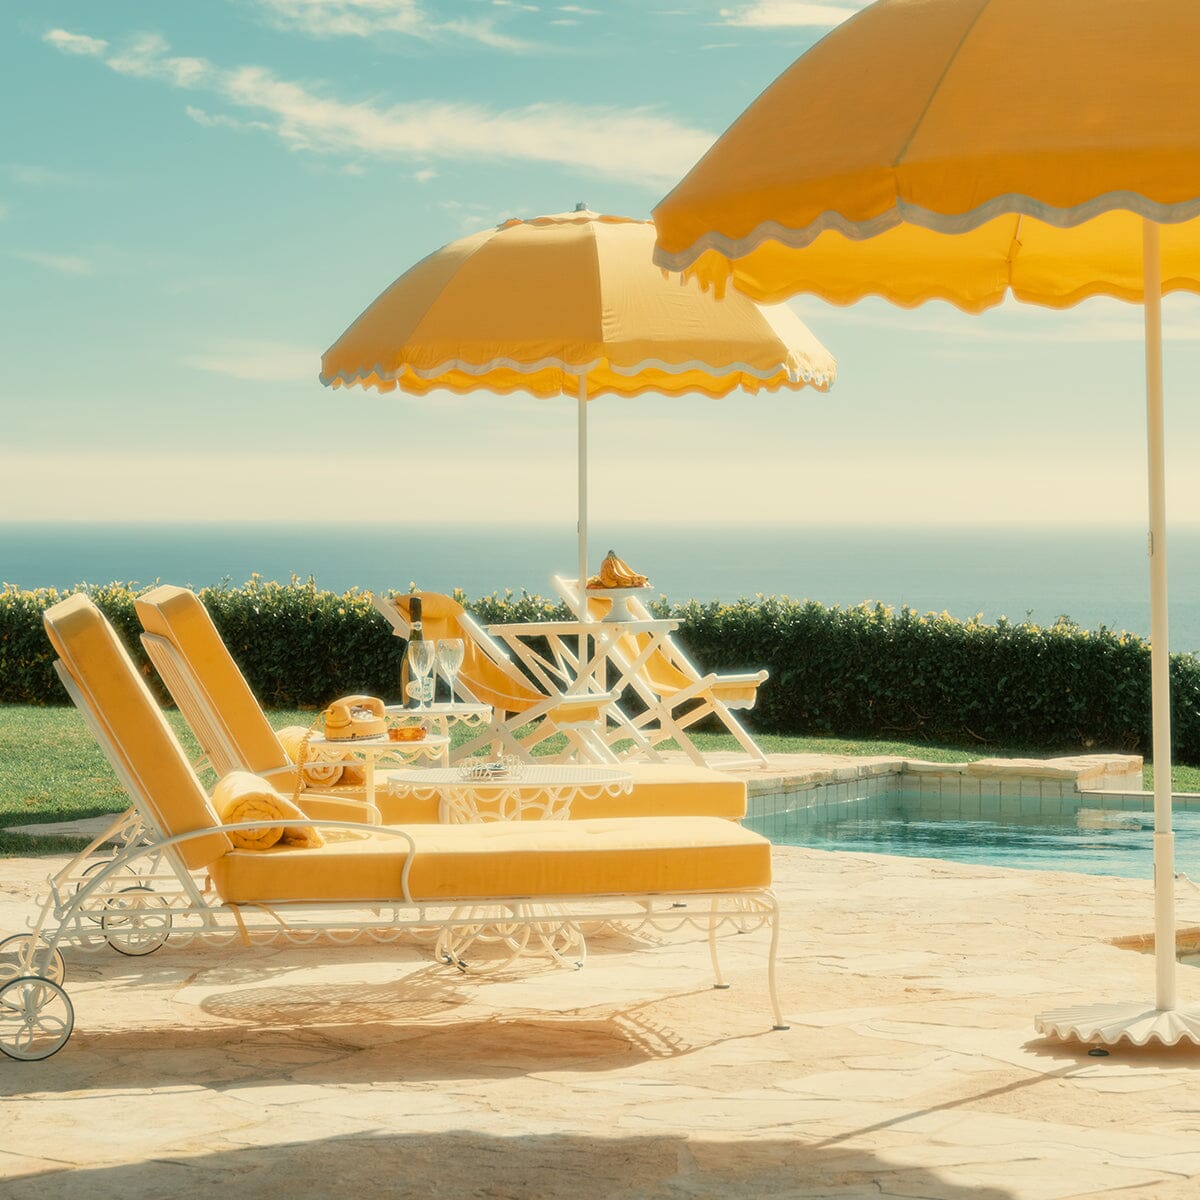 The Al Fresco Sun Lounger Cushion - Rivie Mimosa Al Fresco Sun Lounger Cushions Business & Pleasure Co 